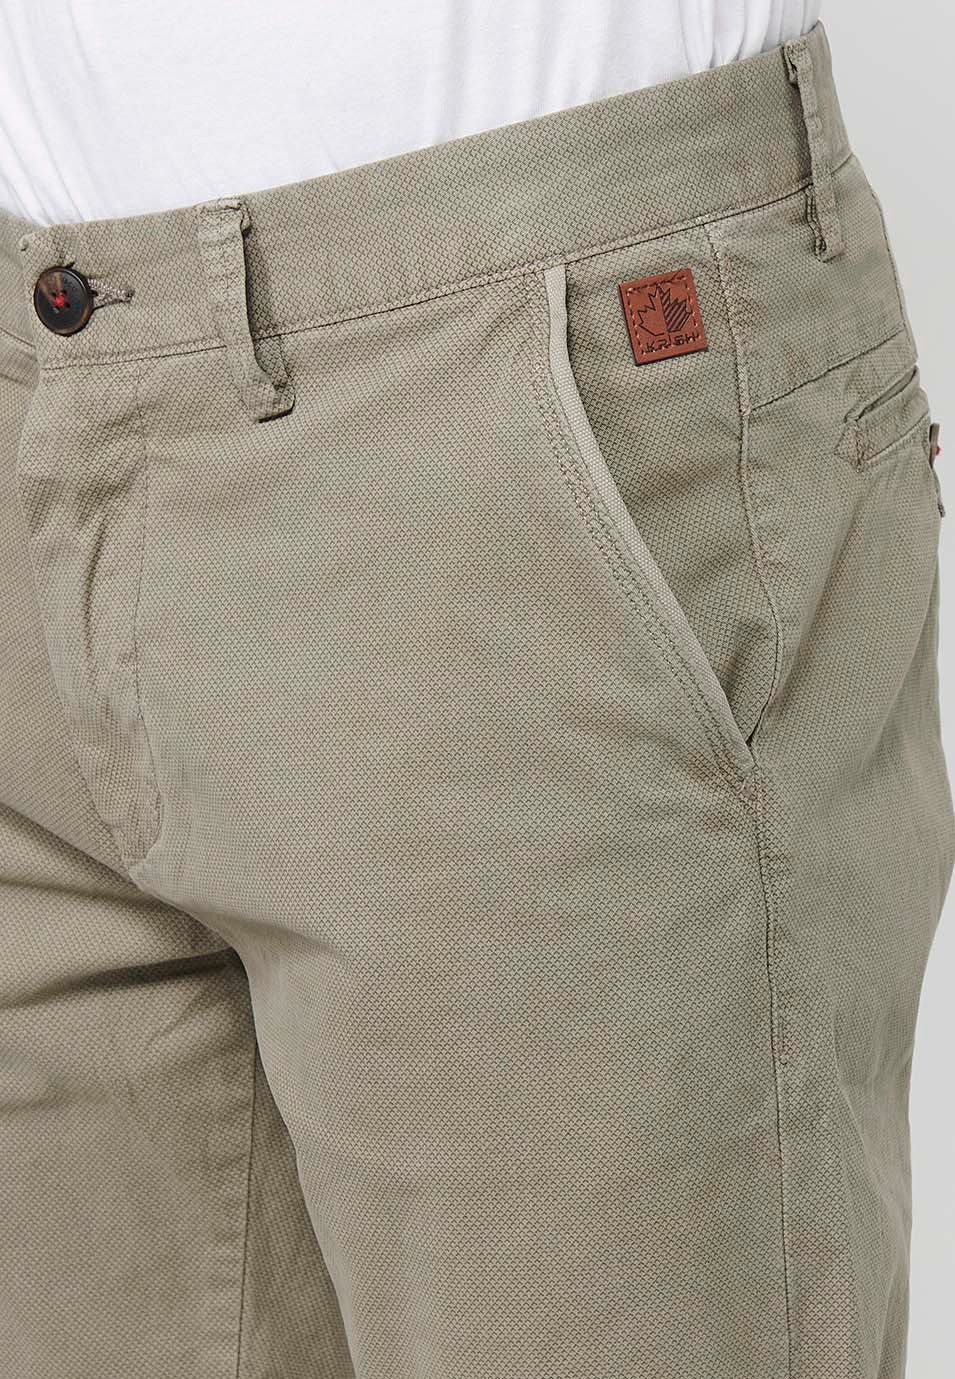 Herren-Bermuda-Chino-Shorts mit Umschlag, Reißverschluss vorne und Knopfverschluss sowie vier Taschen in Nerzfarbe 6